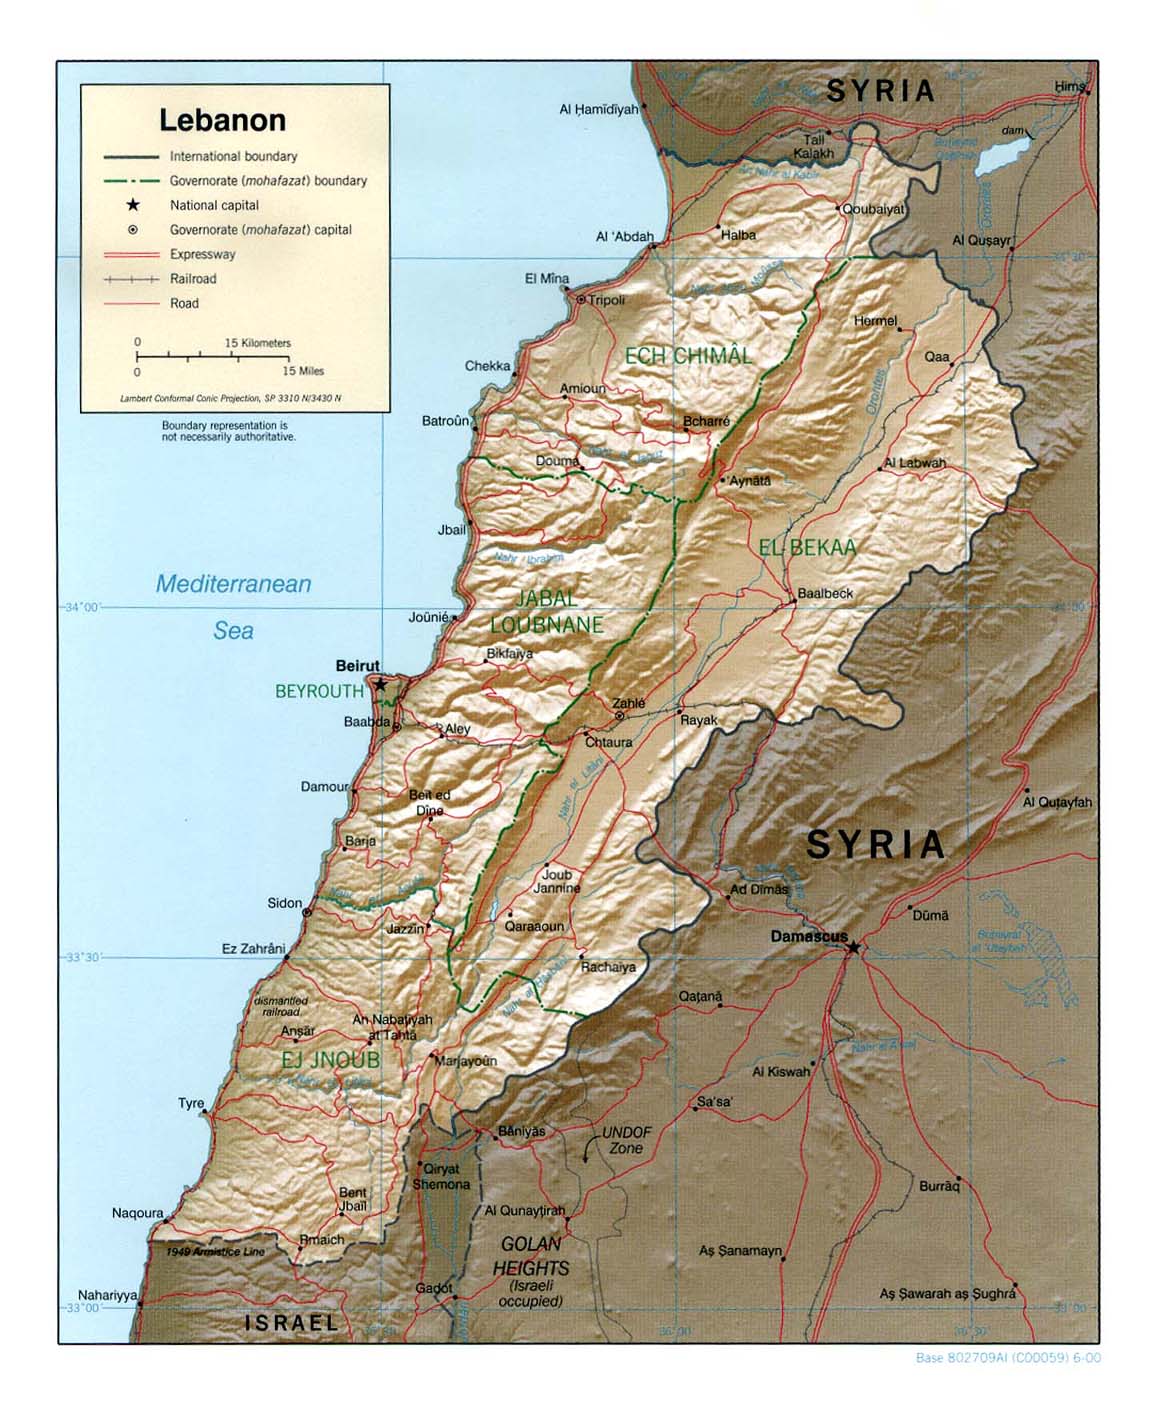 Mapa de Relieve Sombreado de Líbano